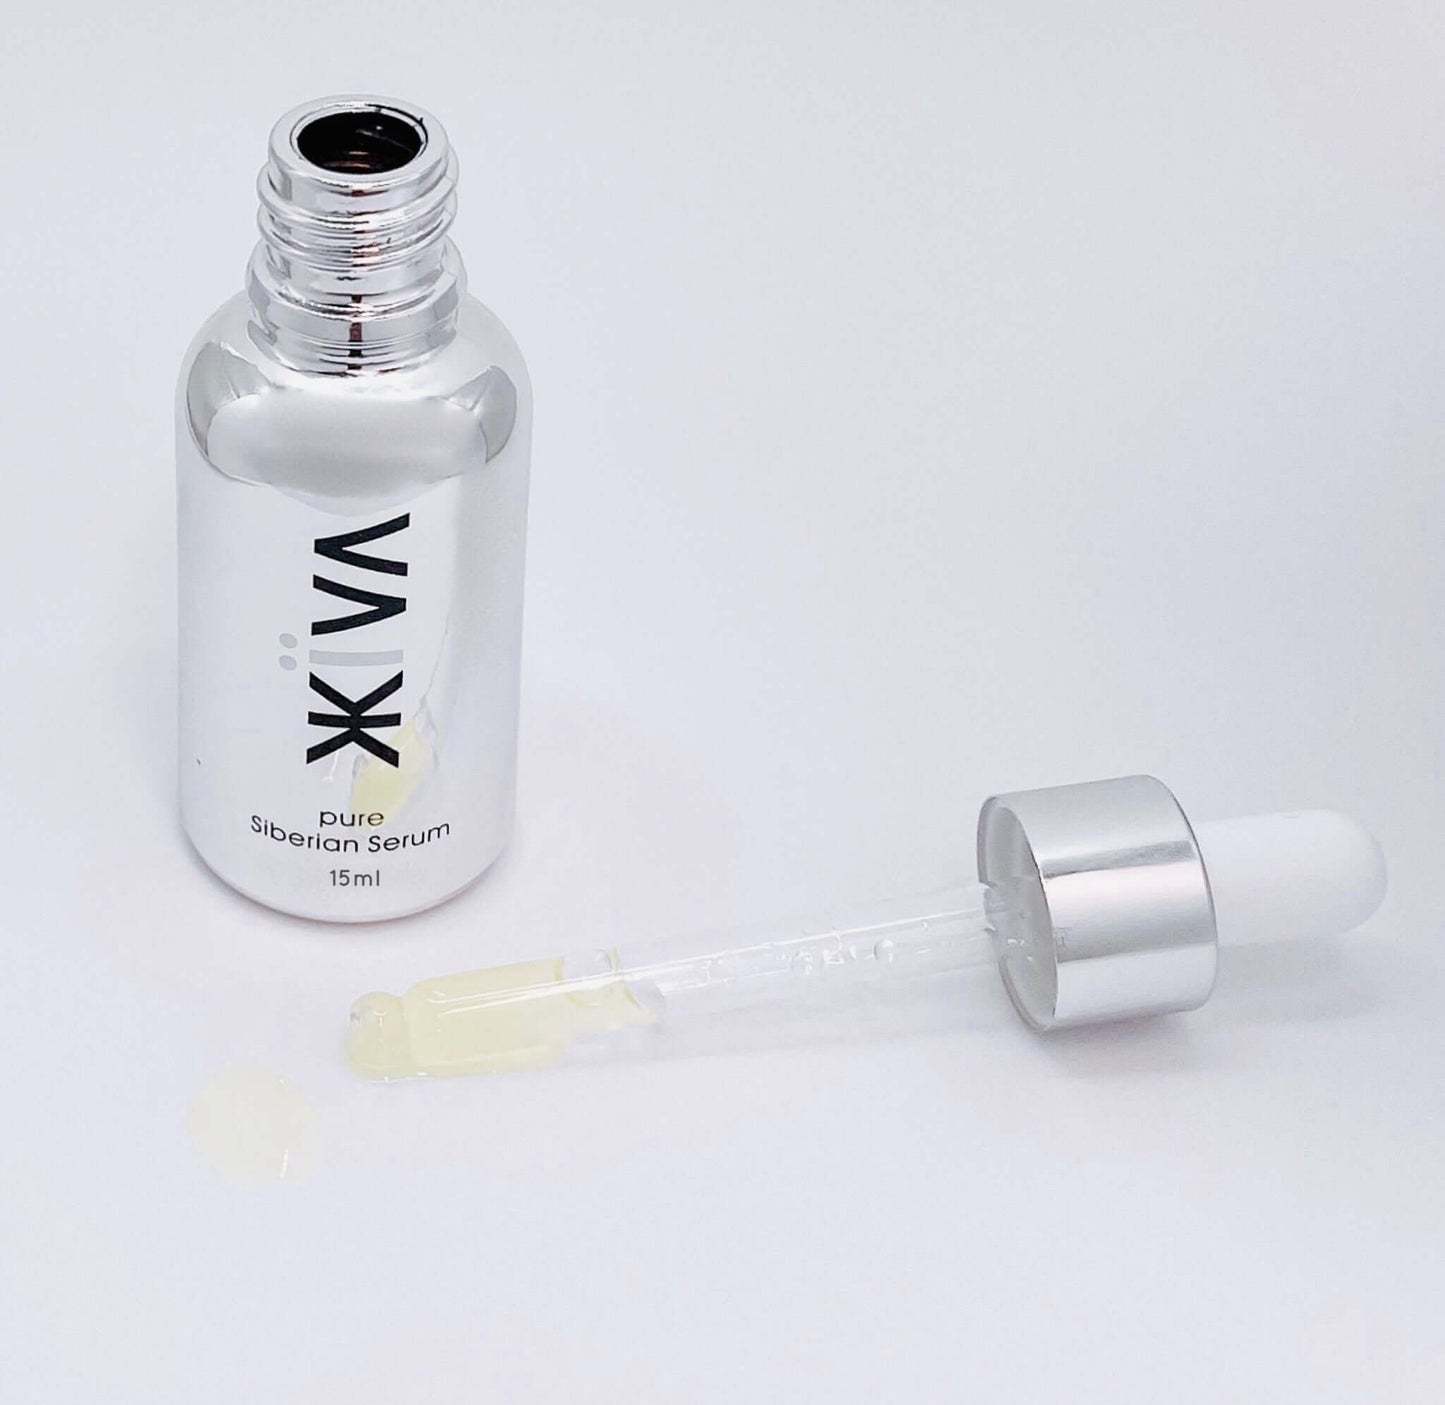 Zhiiva Mini - 100% Natural, Organic, Pure, Chemistry-free, skincare serum 15ml